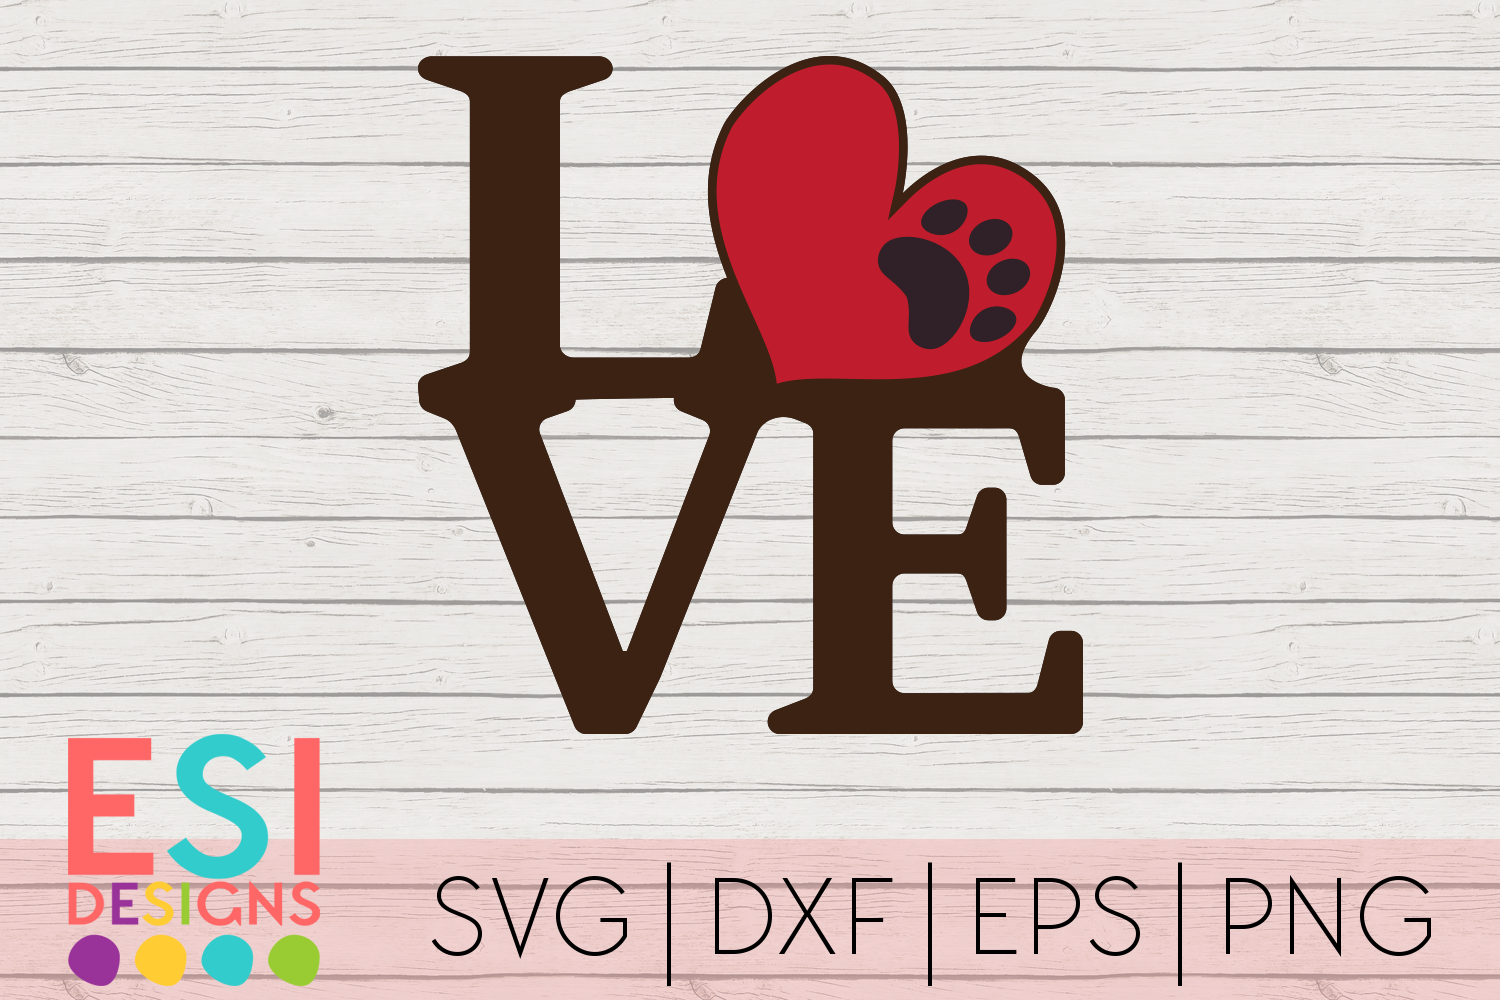 Free Free 301 Love Dog Groomer Svg SVG PNG EPS DXF File